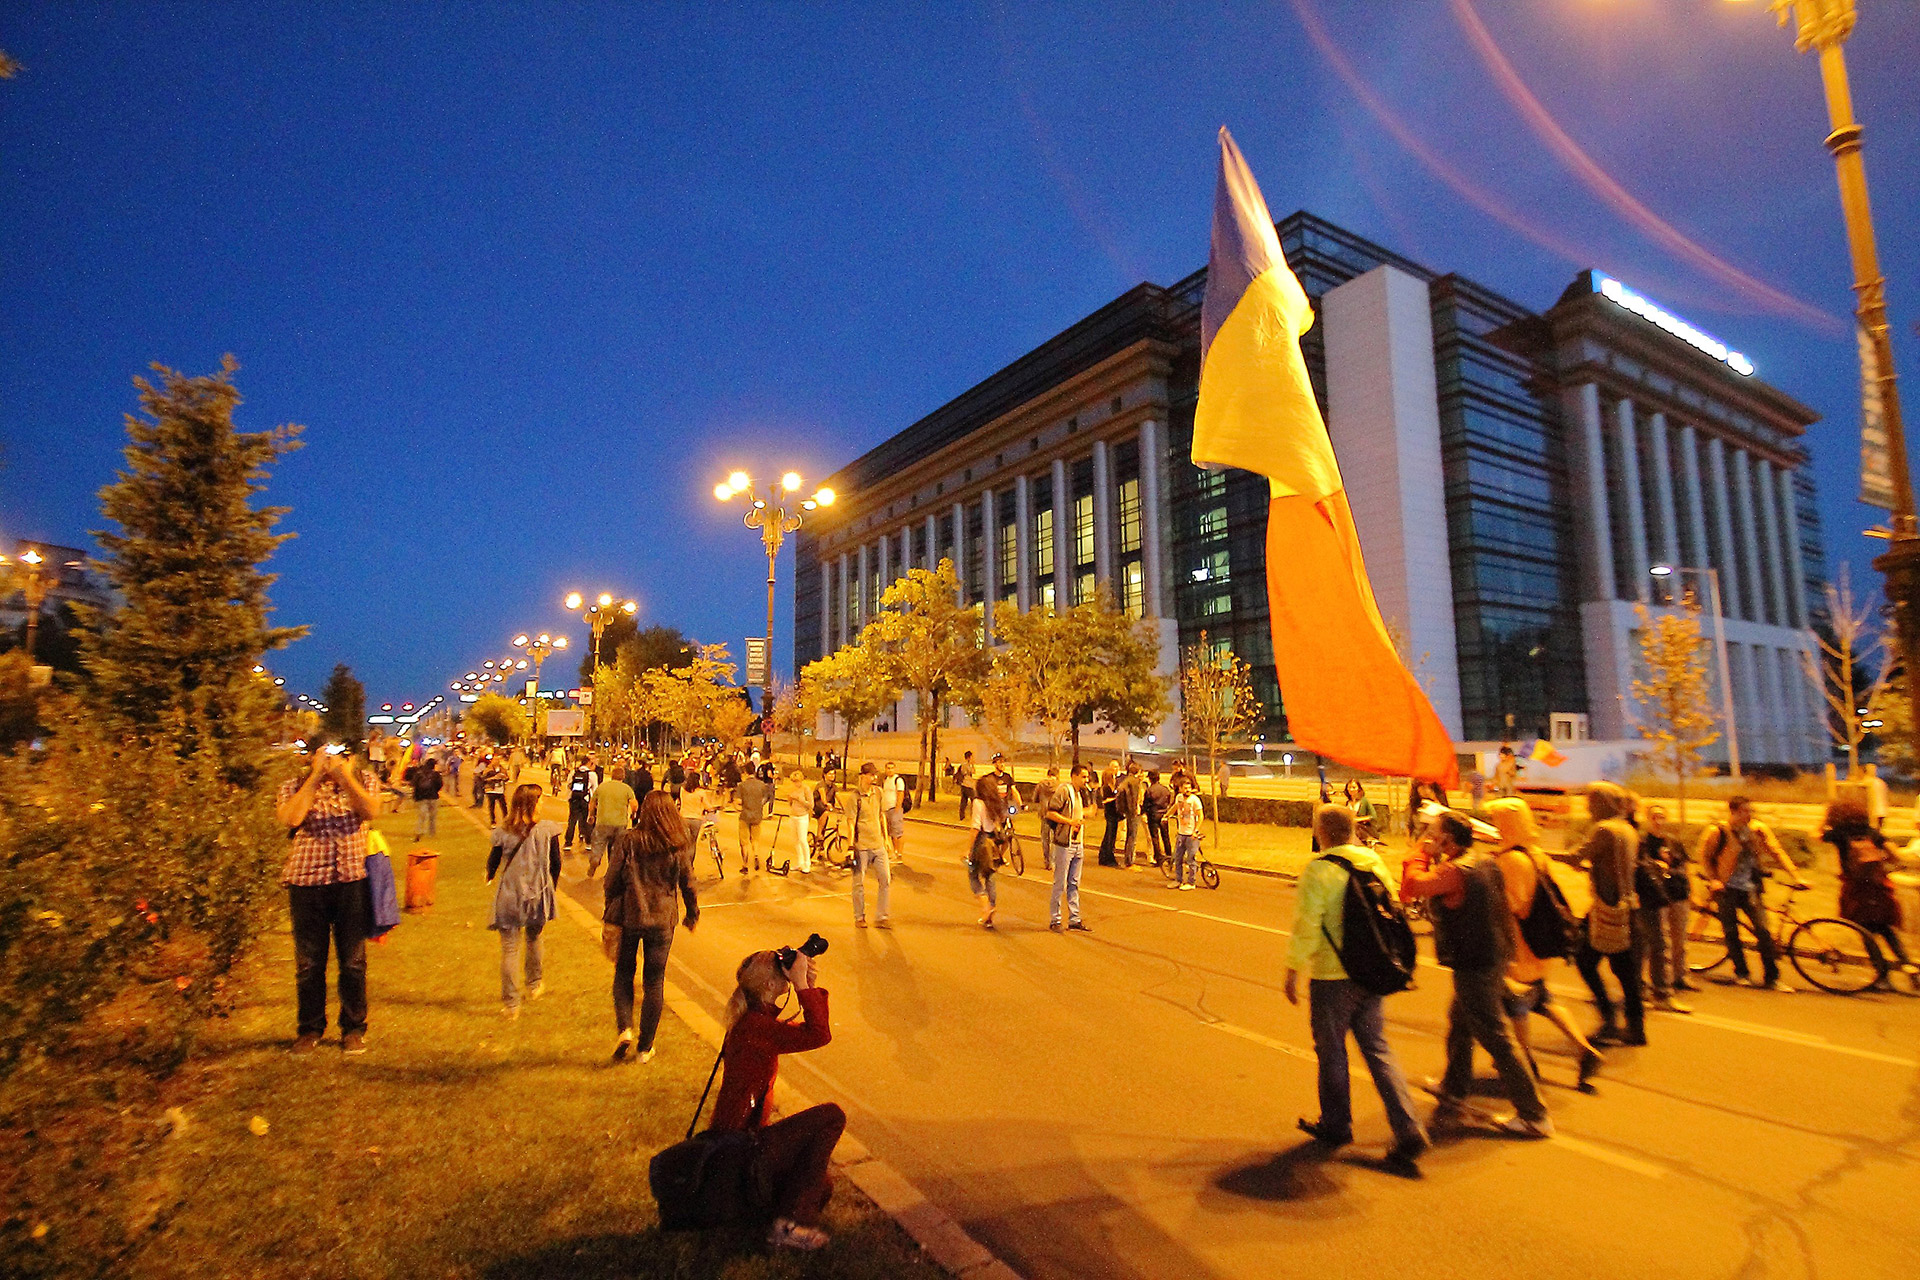 emonstranter går på veien etter solnedgang, 15. september 2013. En har et stort rumensk flagg, flere tar bilder. I bakgrunnen ser man det rumenske nasjonalbiblioteket.